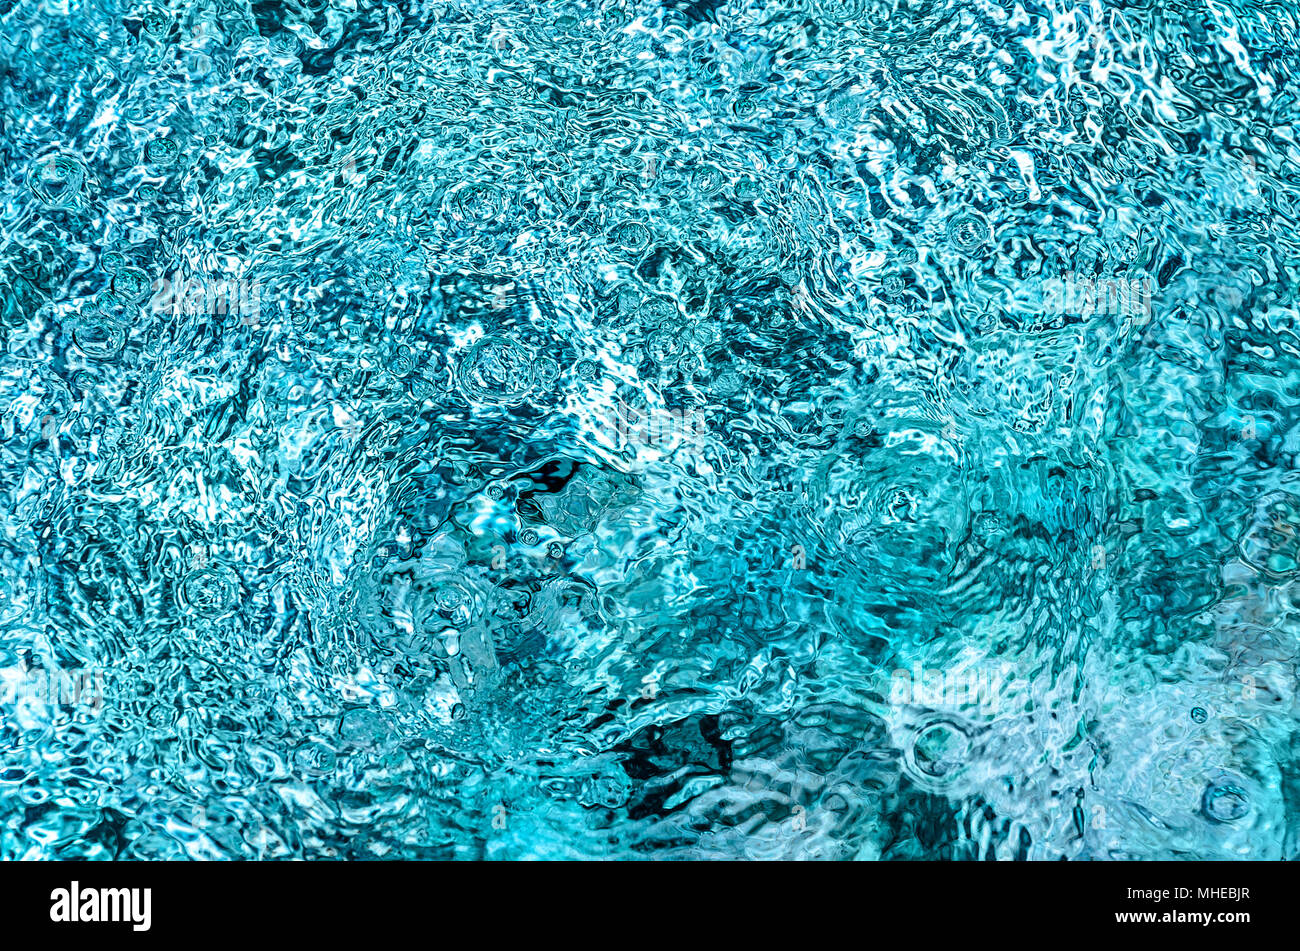 Il blu della piscina di acqua increspata dettaglio Foto Stock